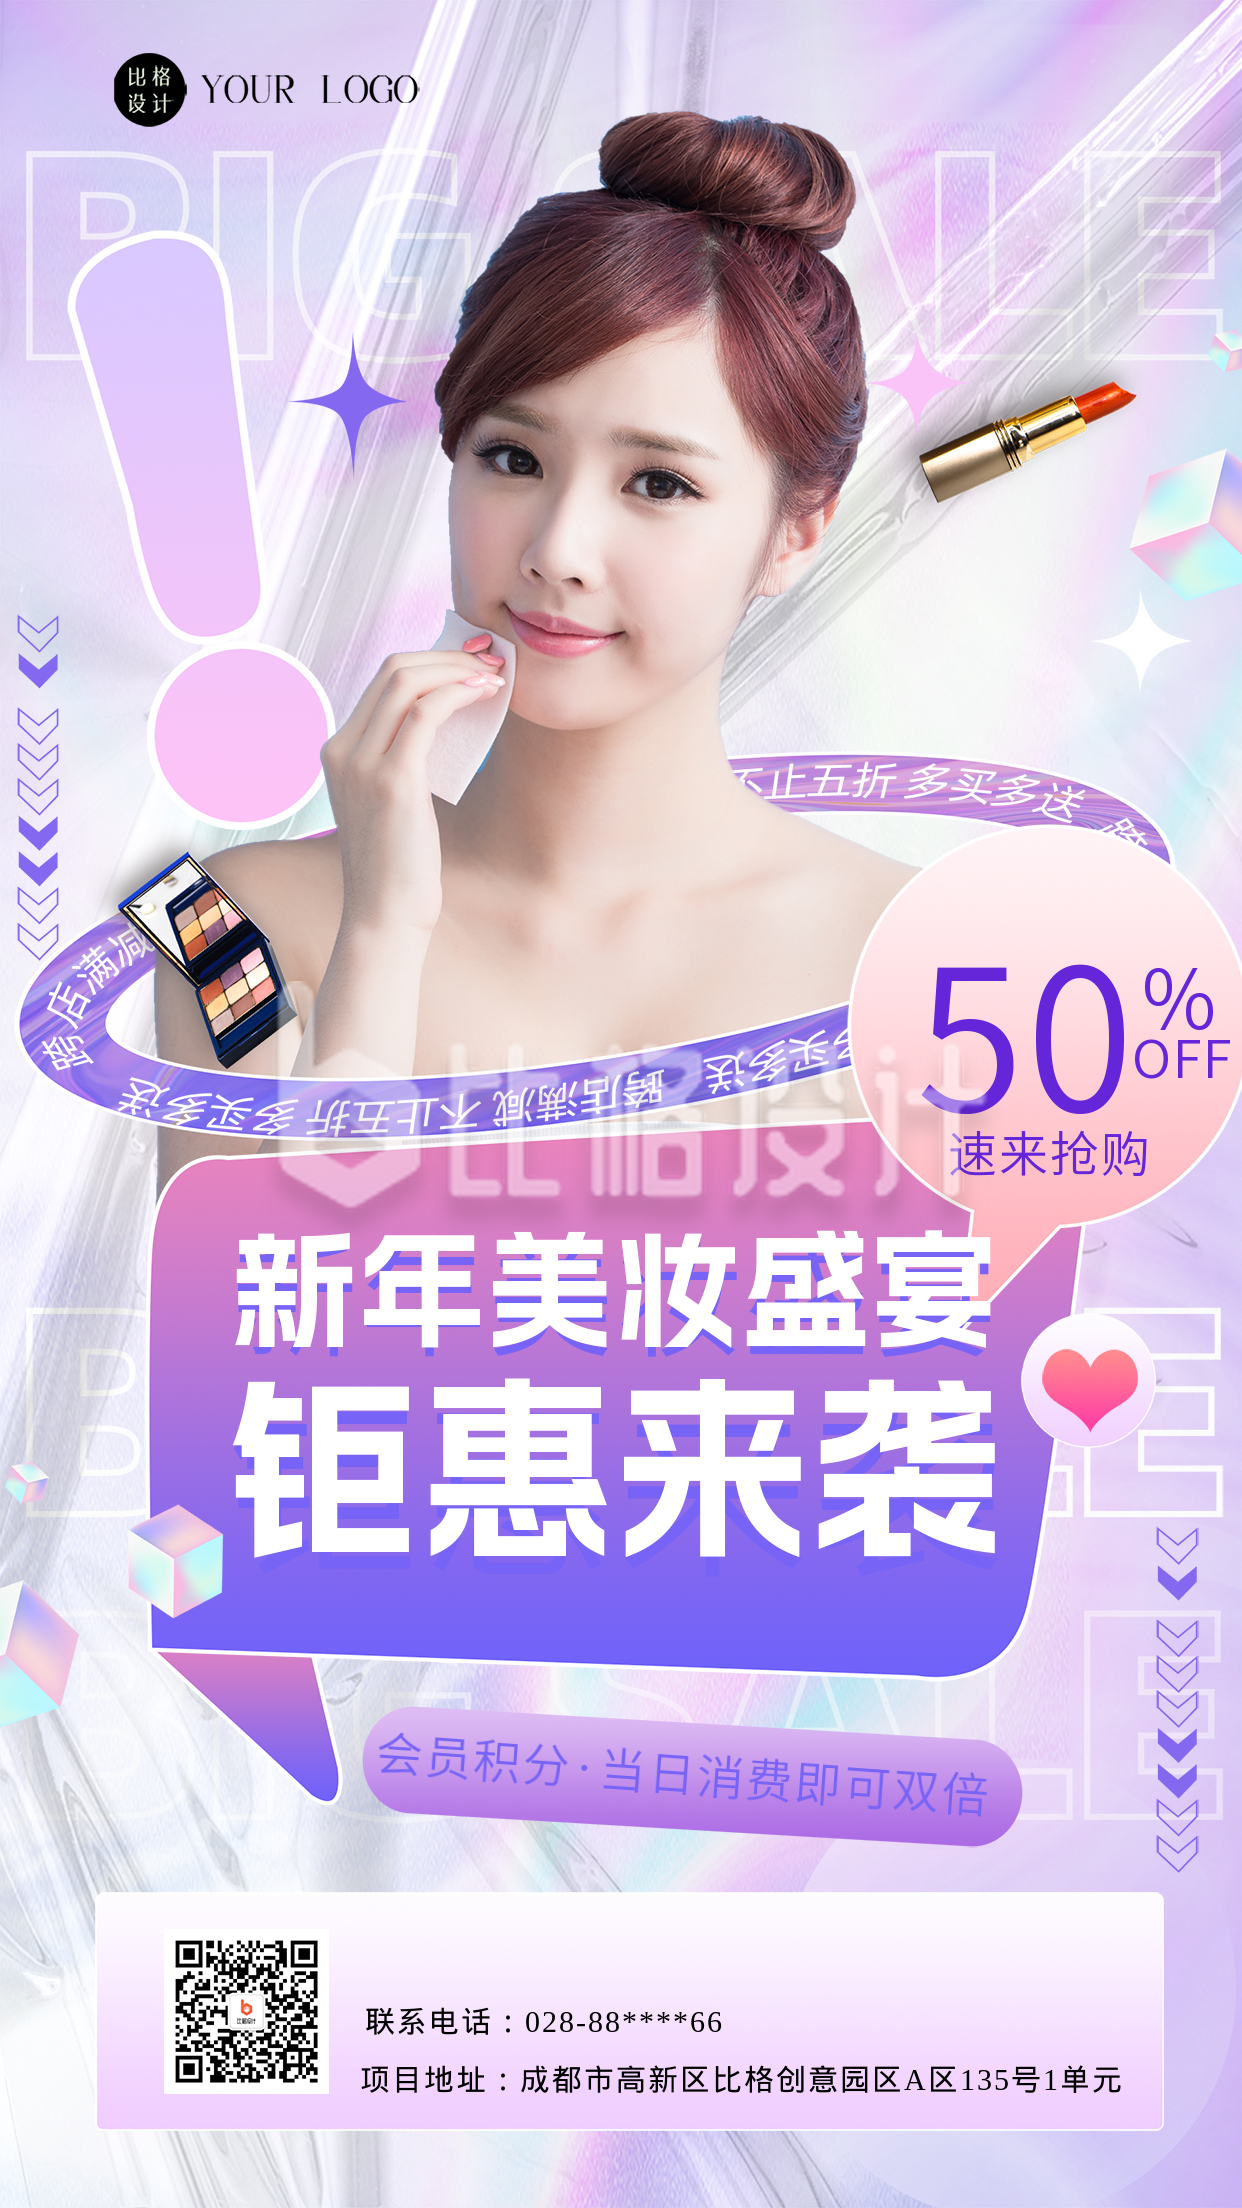 紫色炫酷美妆活动宣传手机海报